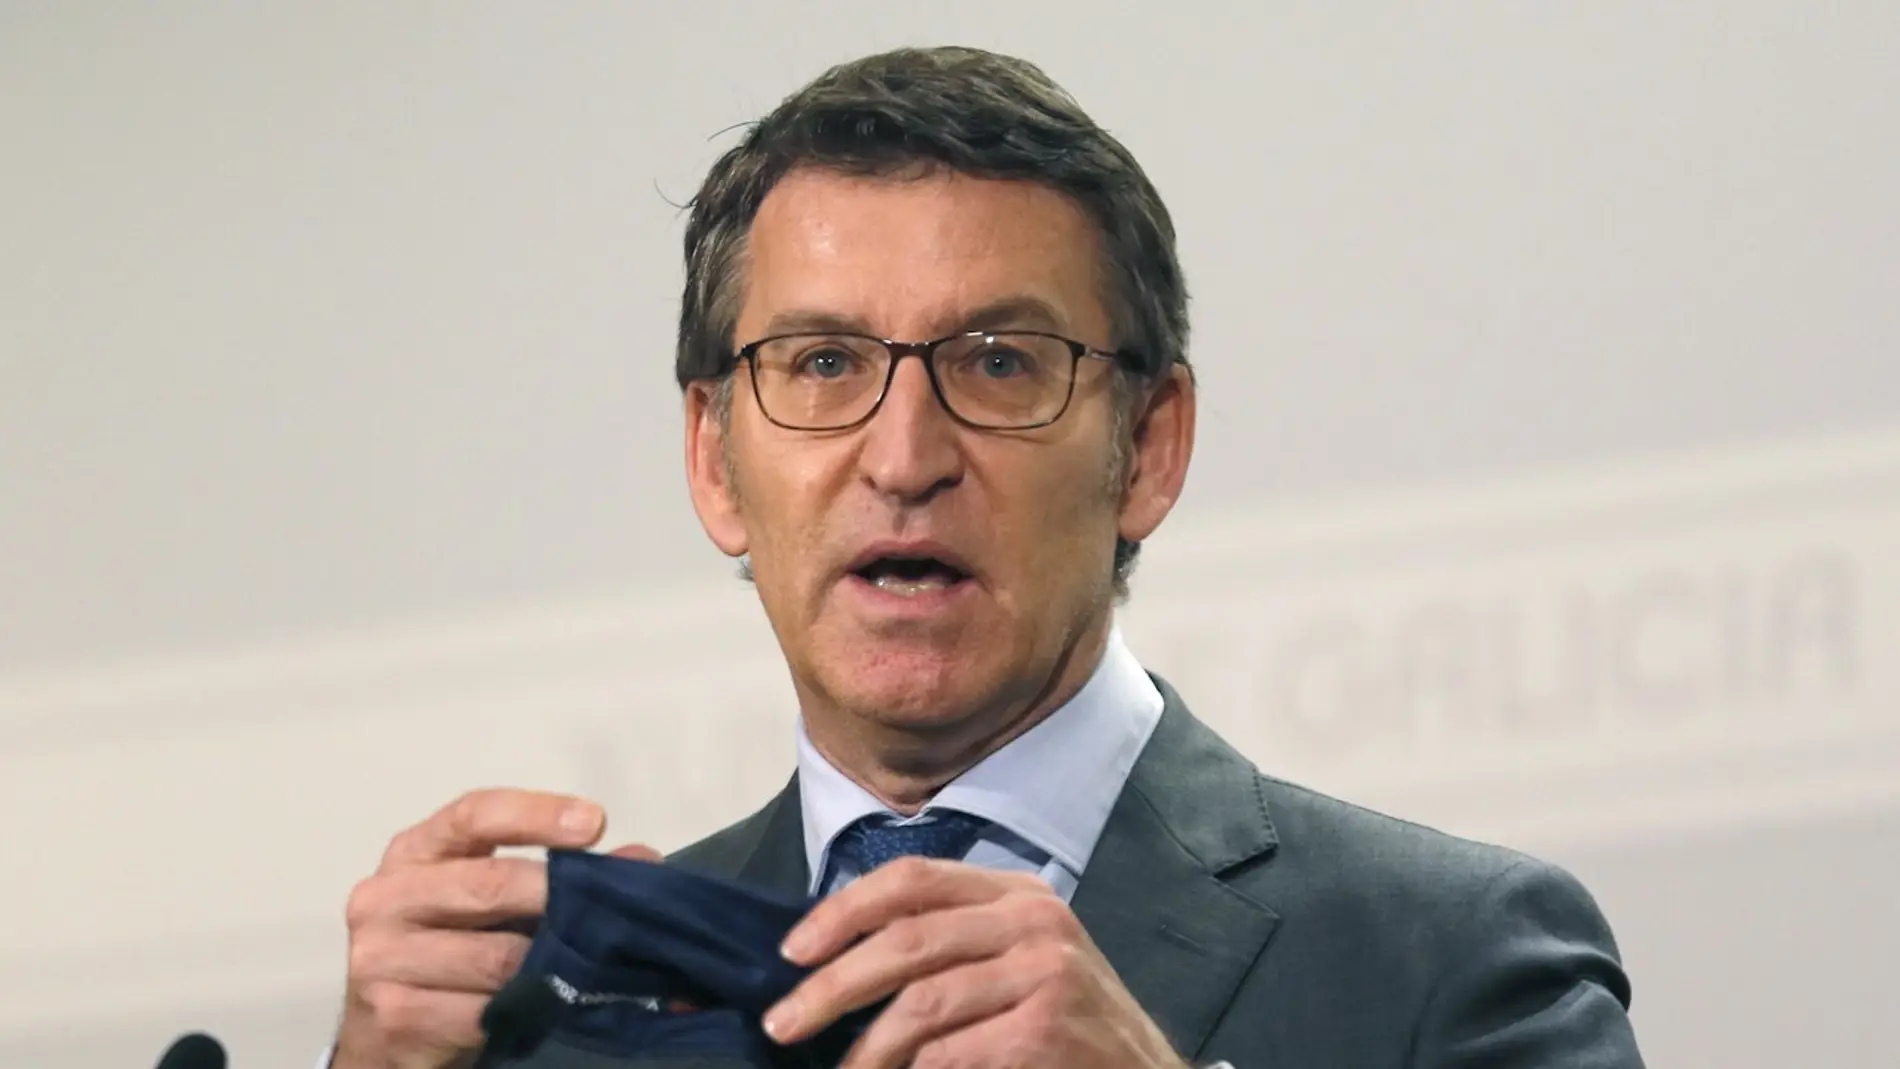 Galicia endurece las restricciones y cierra la hostelería: estas son las nuevas medidas aprobadas